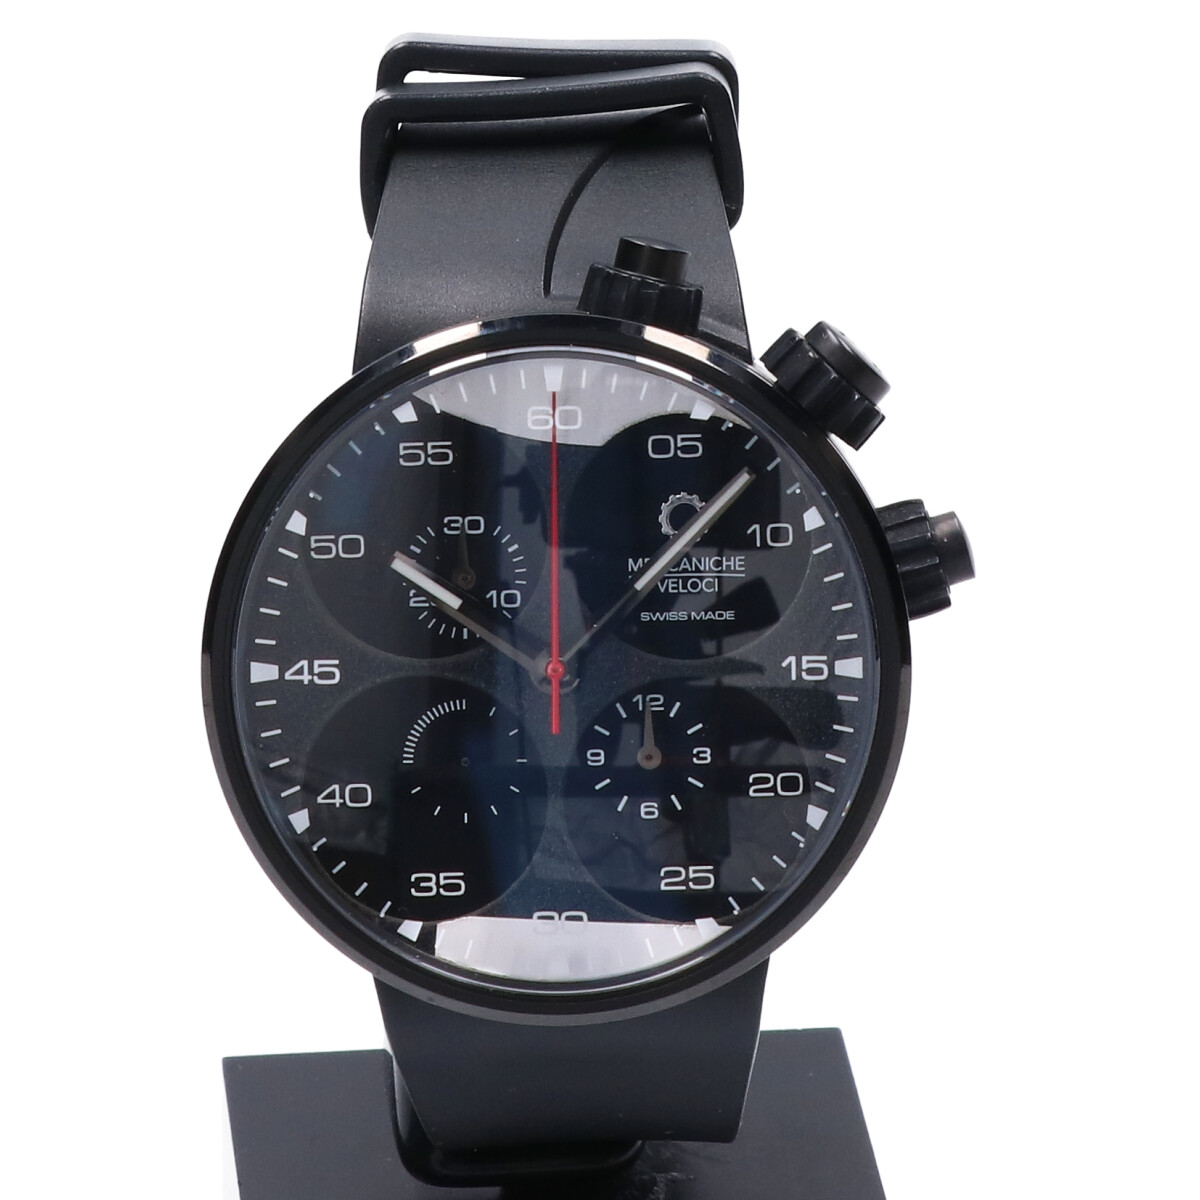 メカニケヴェローチのW123KG143 クアトロヴァルヴォレ44 オンリーワンコレクション 自動巻き時計の買取実績です。